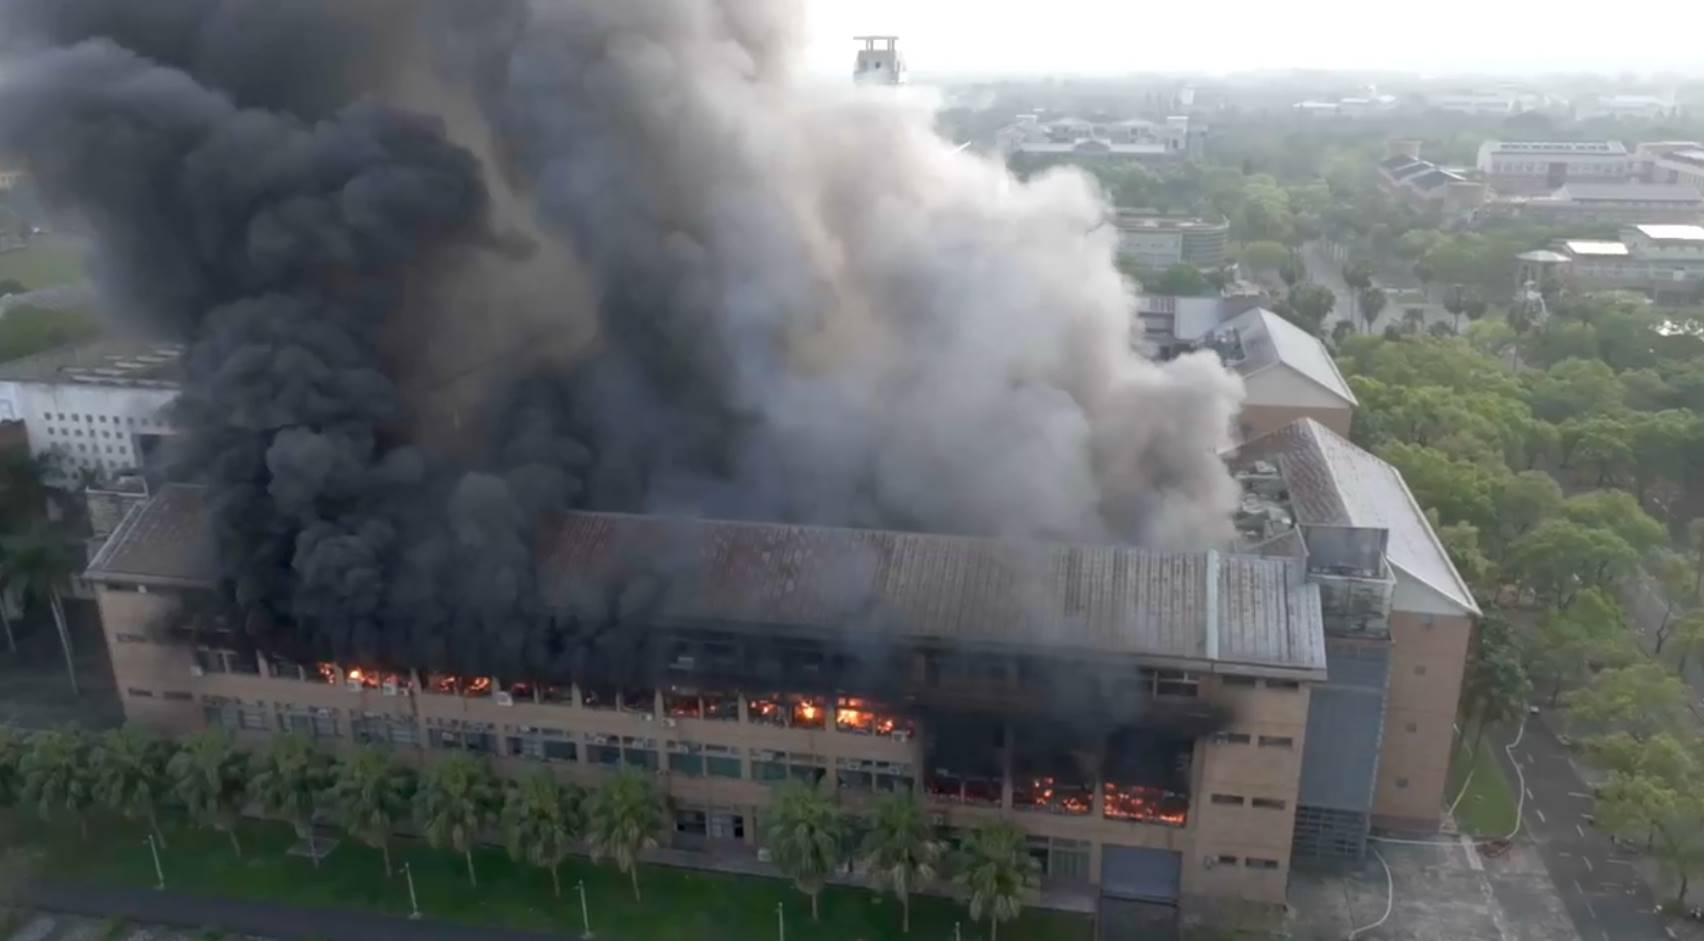 東華大學理工學院一館在地震中因化學物質傾倒起火燃燒